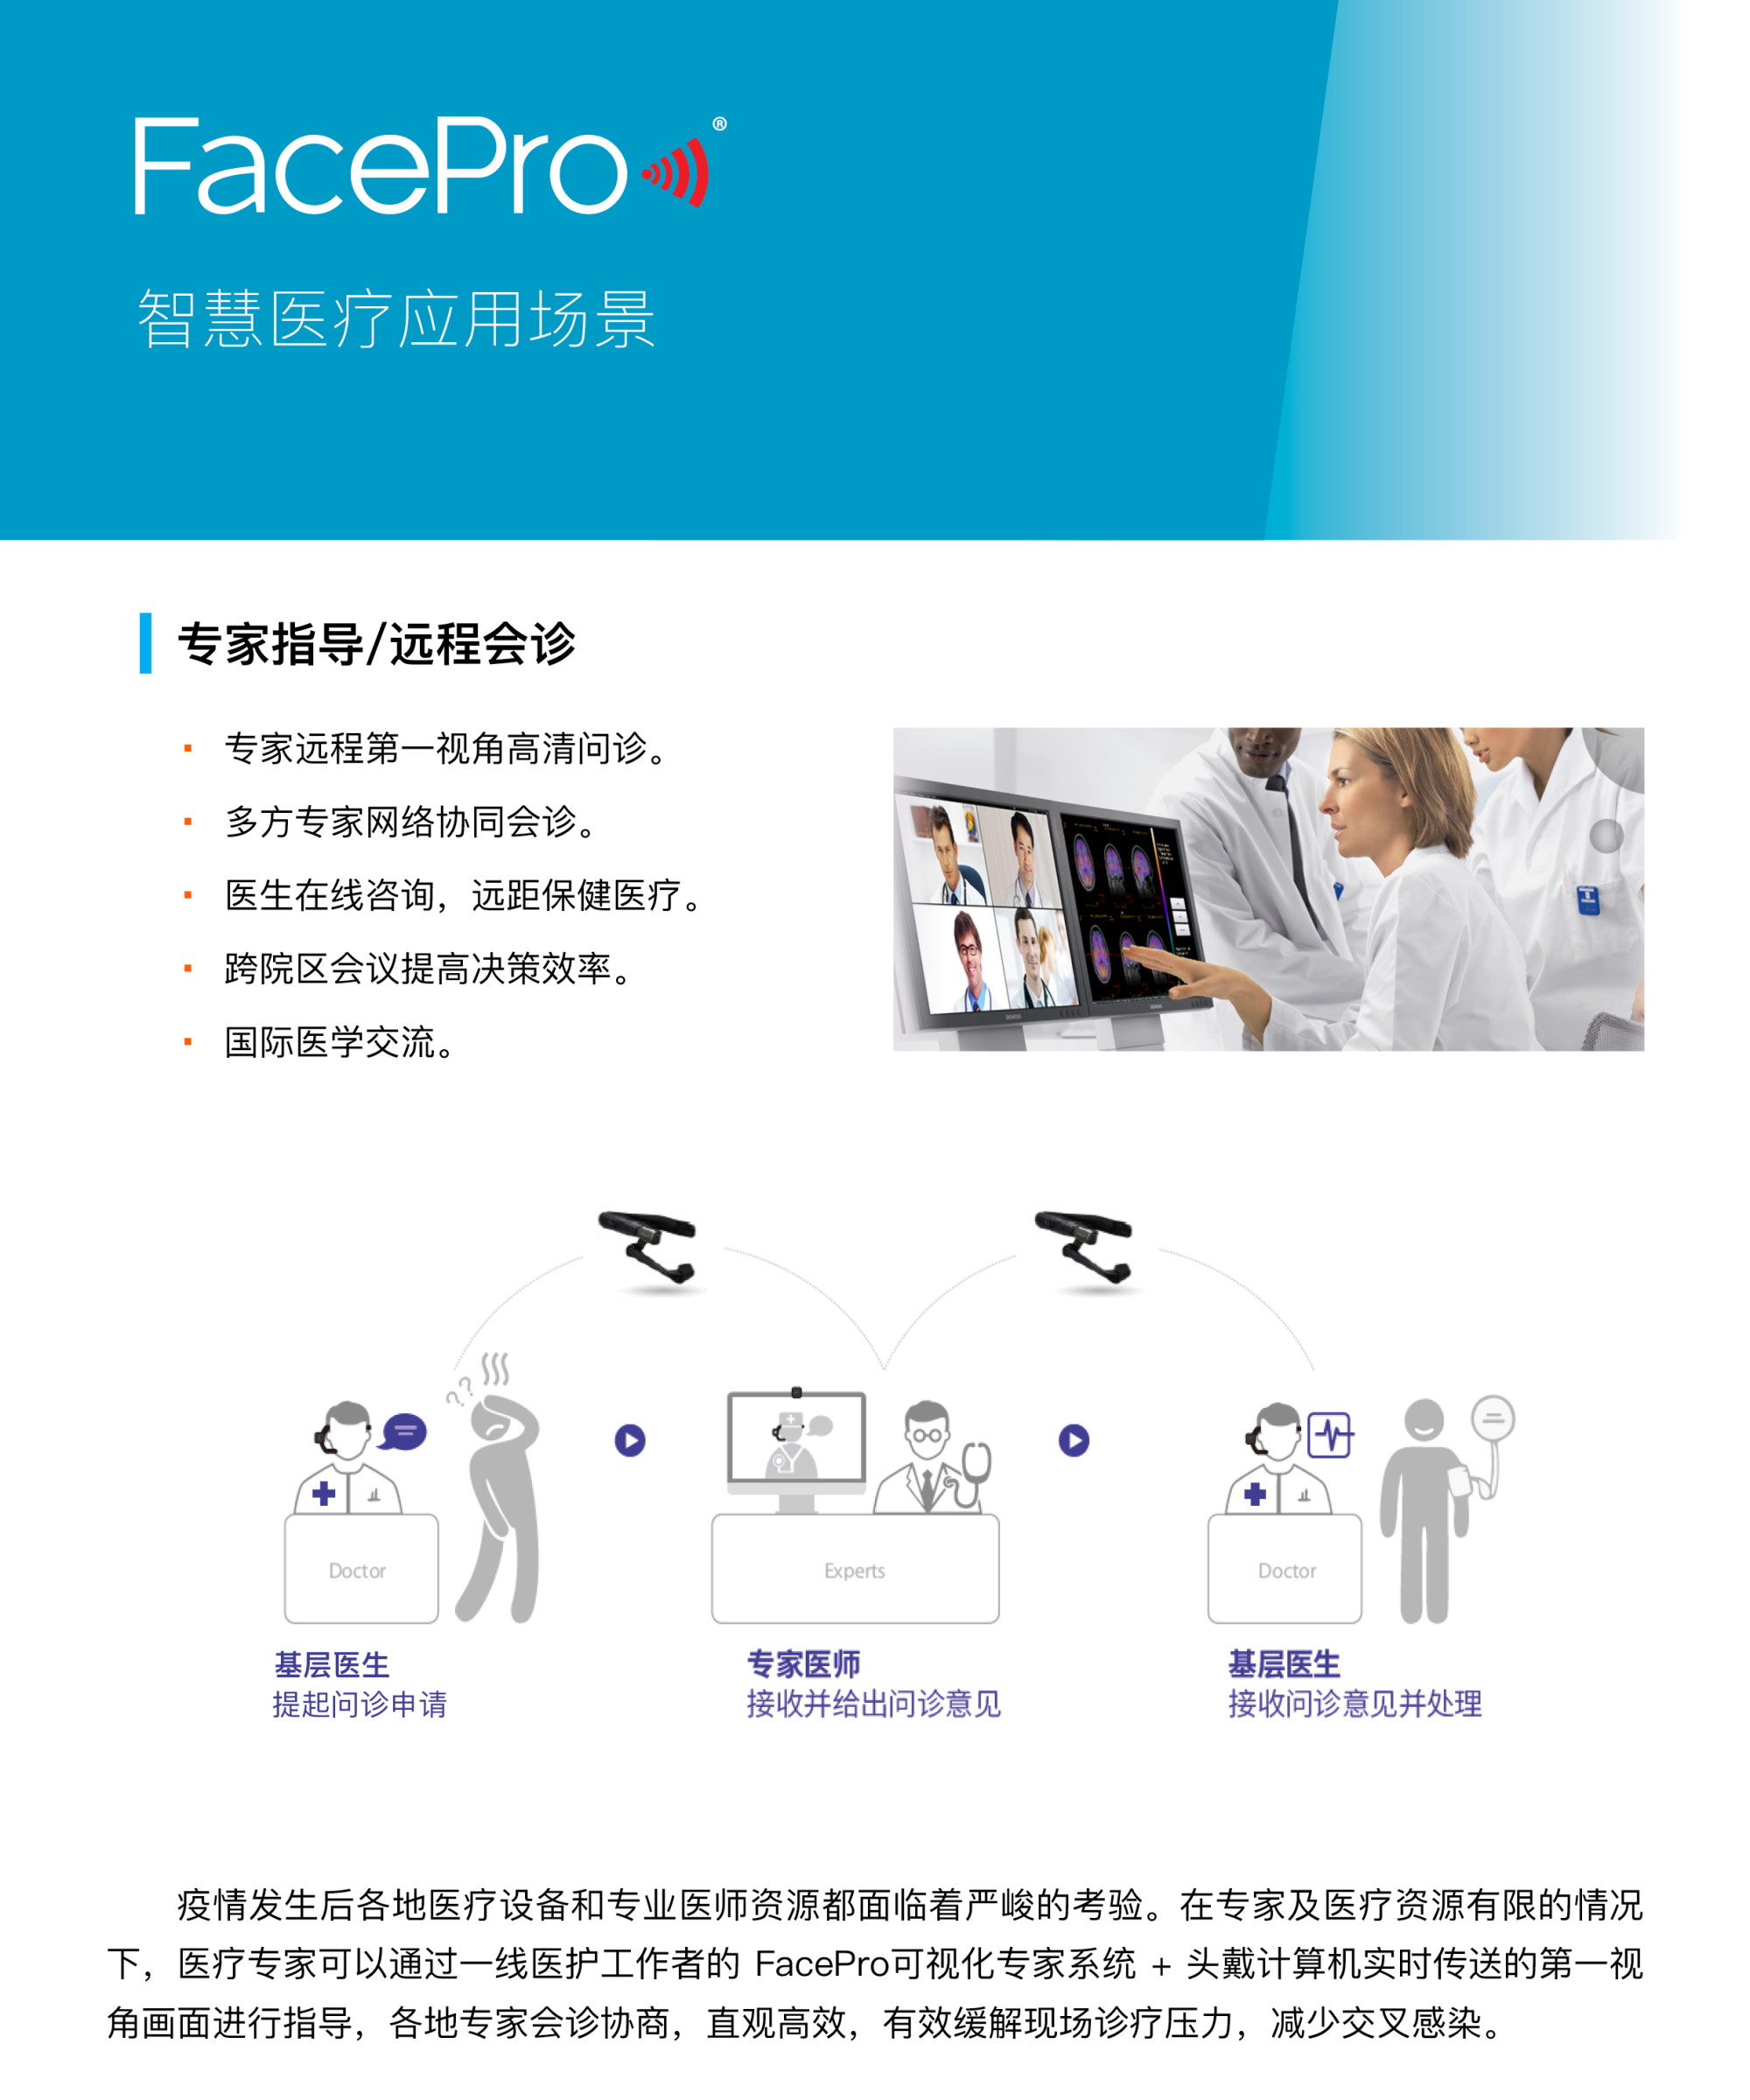 FacePro Xpert 远程医疗系统